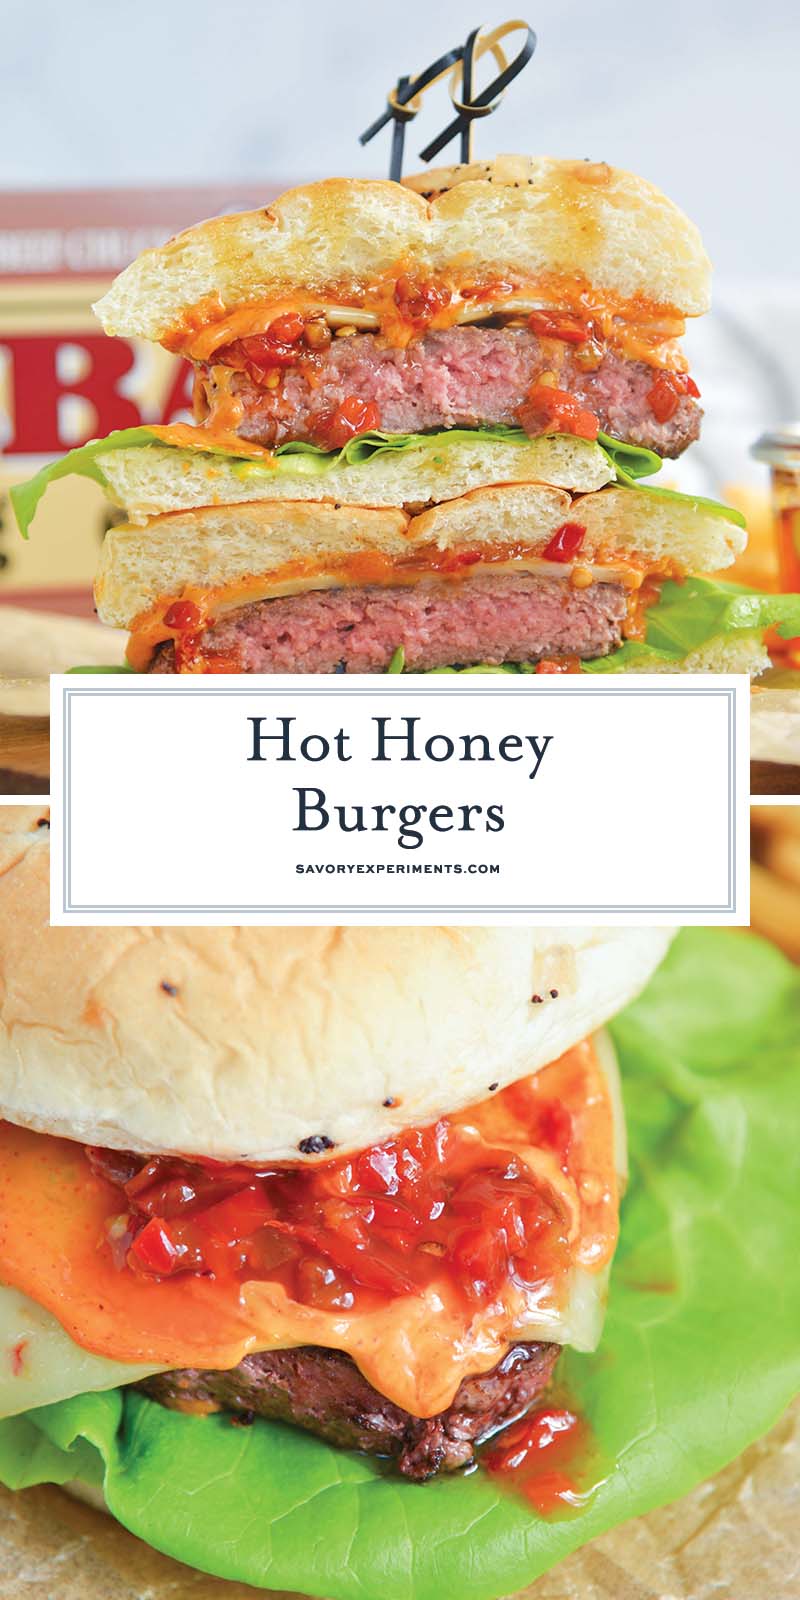 Hot Honey Burgers - Juicy Gourmet Burger Recipe